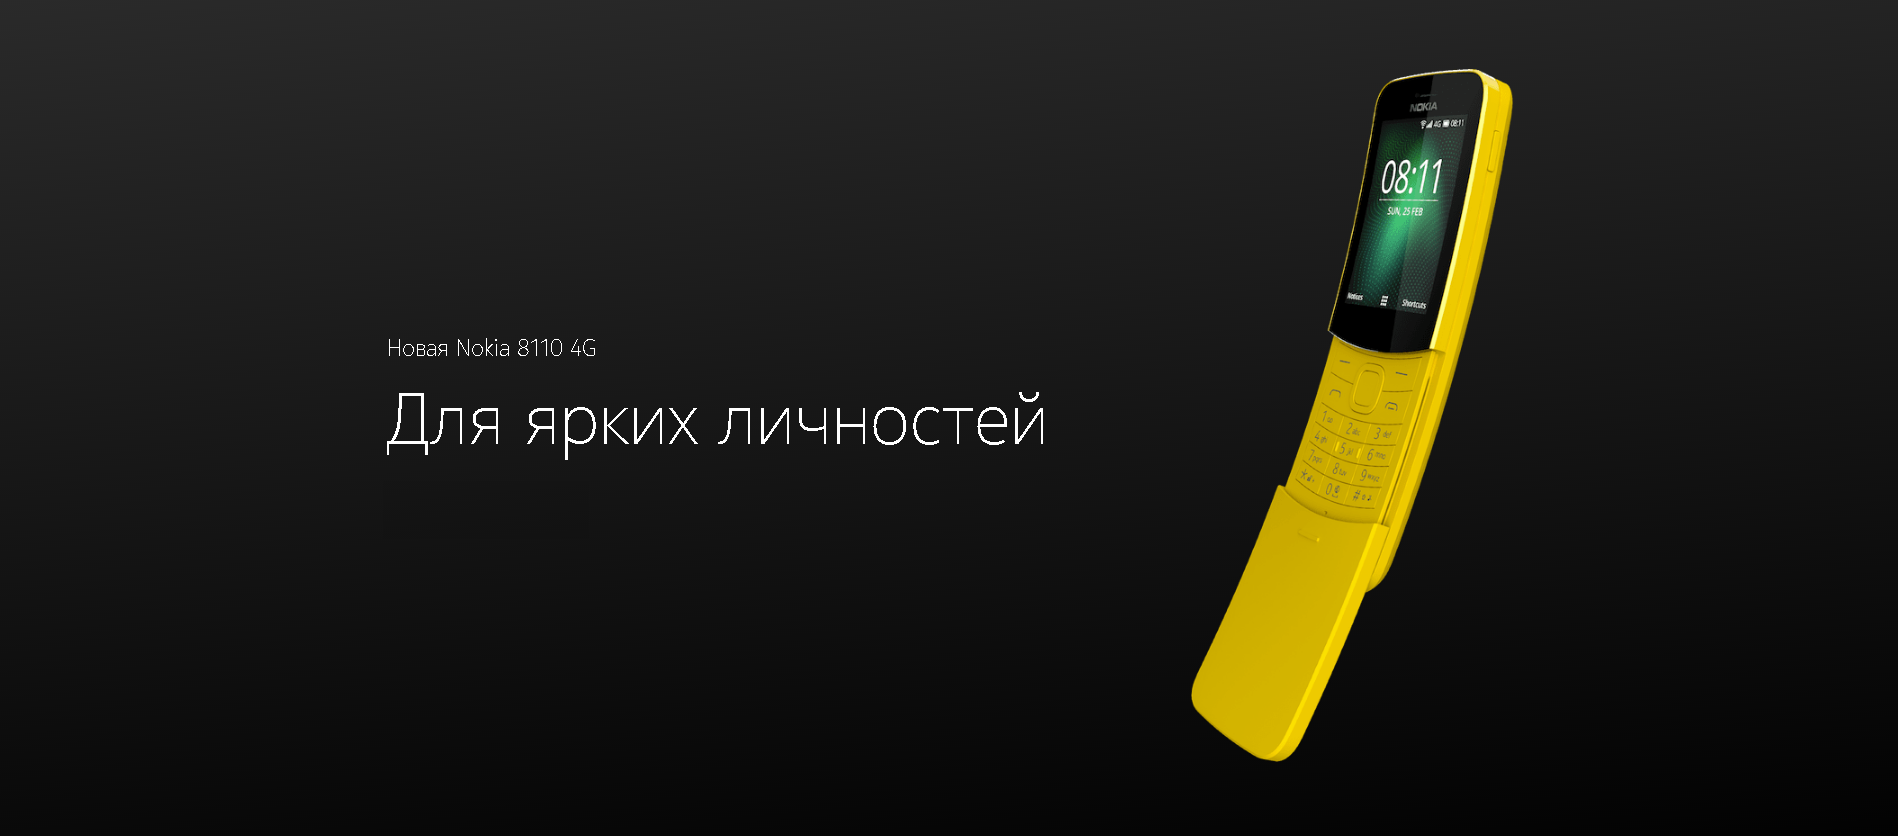  Обзор Nokia 8110 4G: телефон, как в матрице ? Другие устройства  - 5b504b2ec5eb7